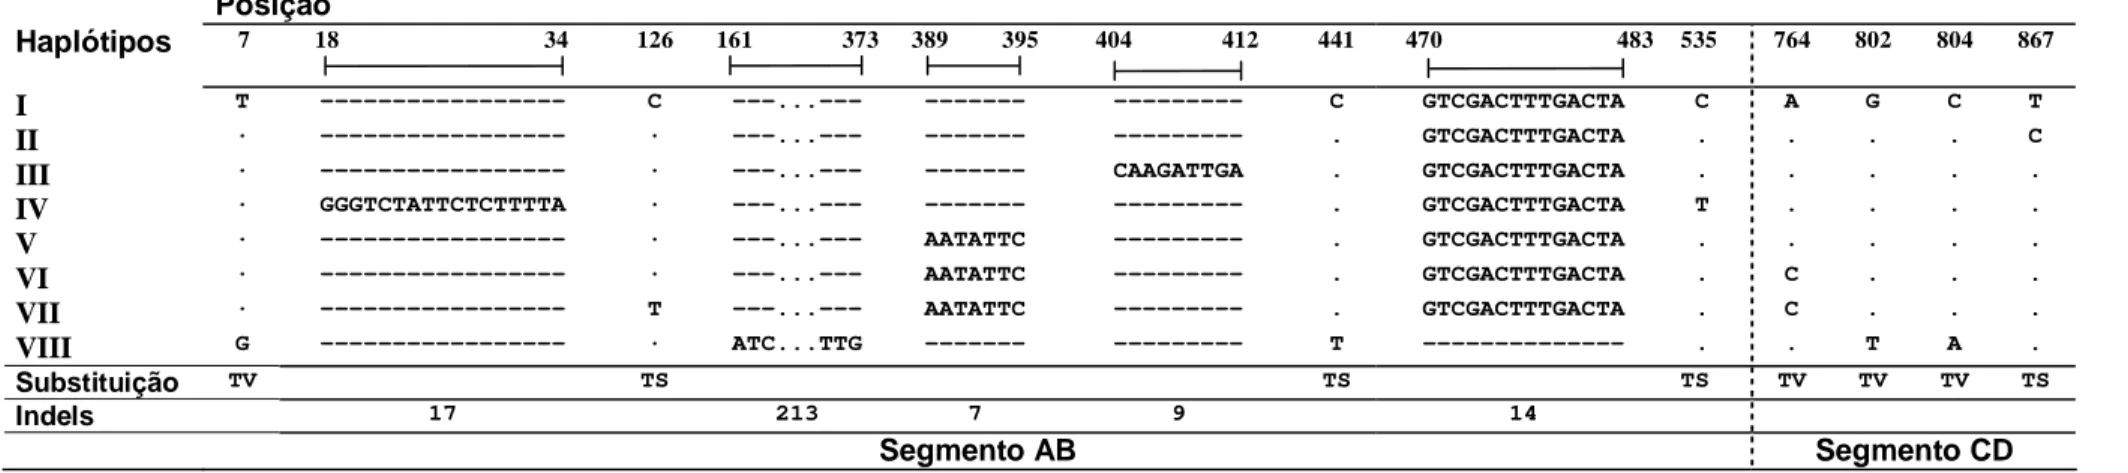 Figura 6 - Seqüências alinhadas do fragmento tnrT-tnrL do cpDNA de Psychotria ipecacuanha discriminando oito haplótipos  entre 40 seqüências obtidas